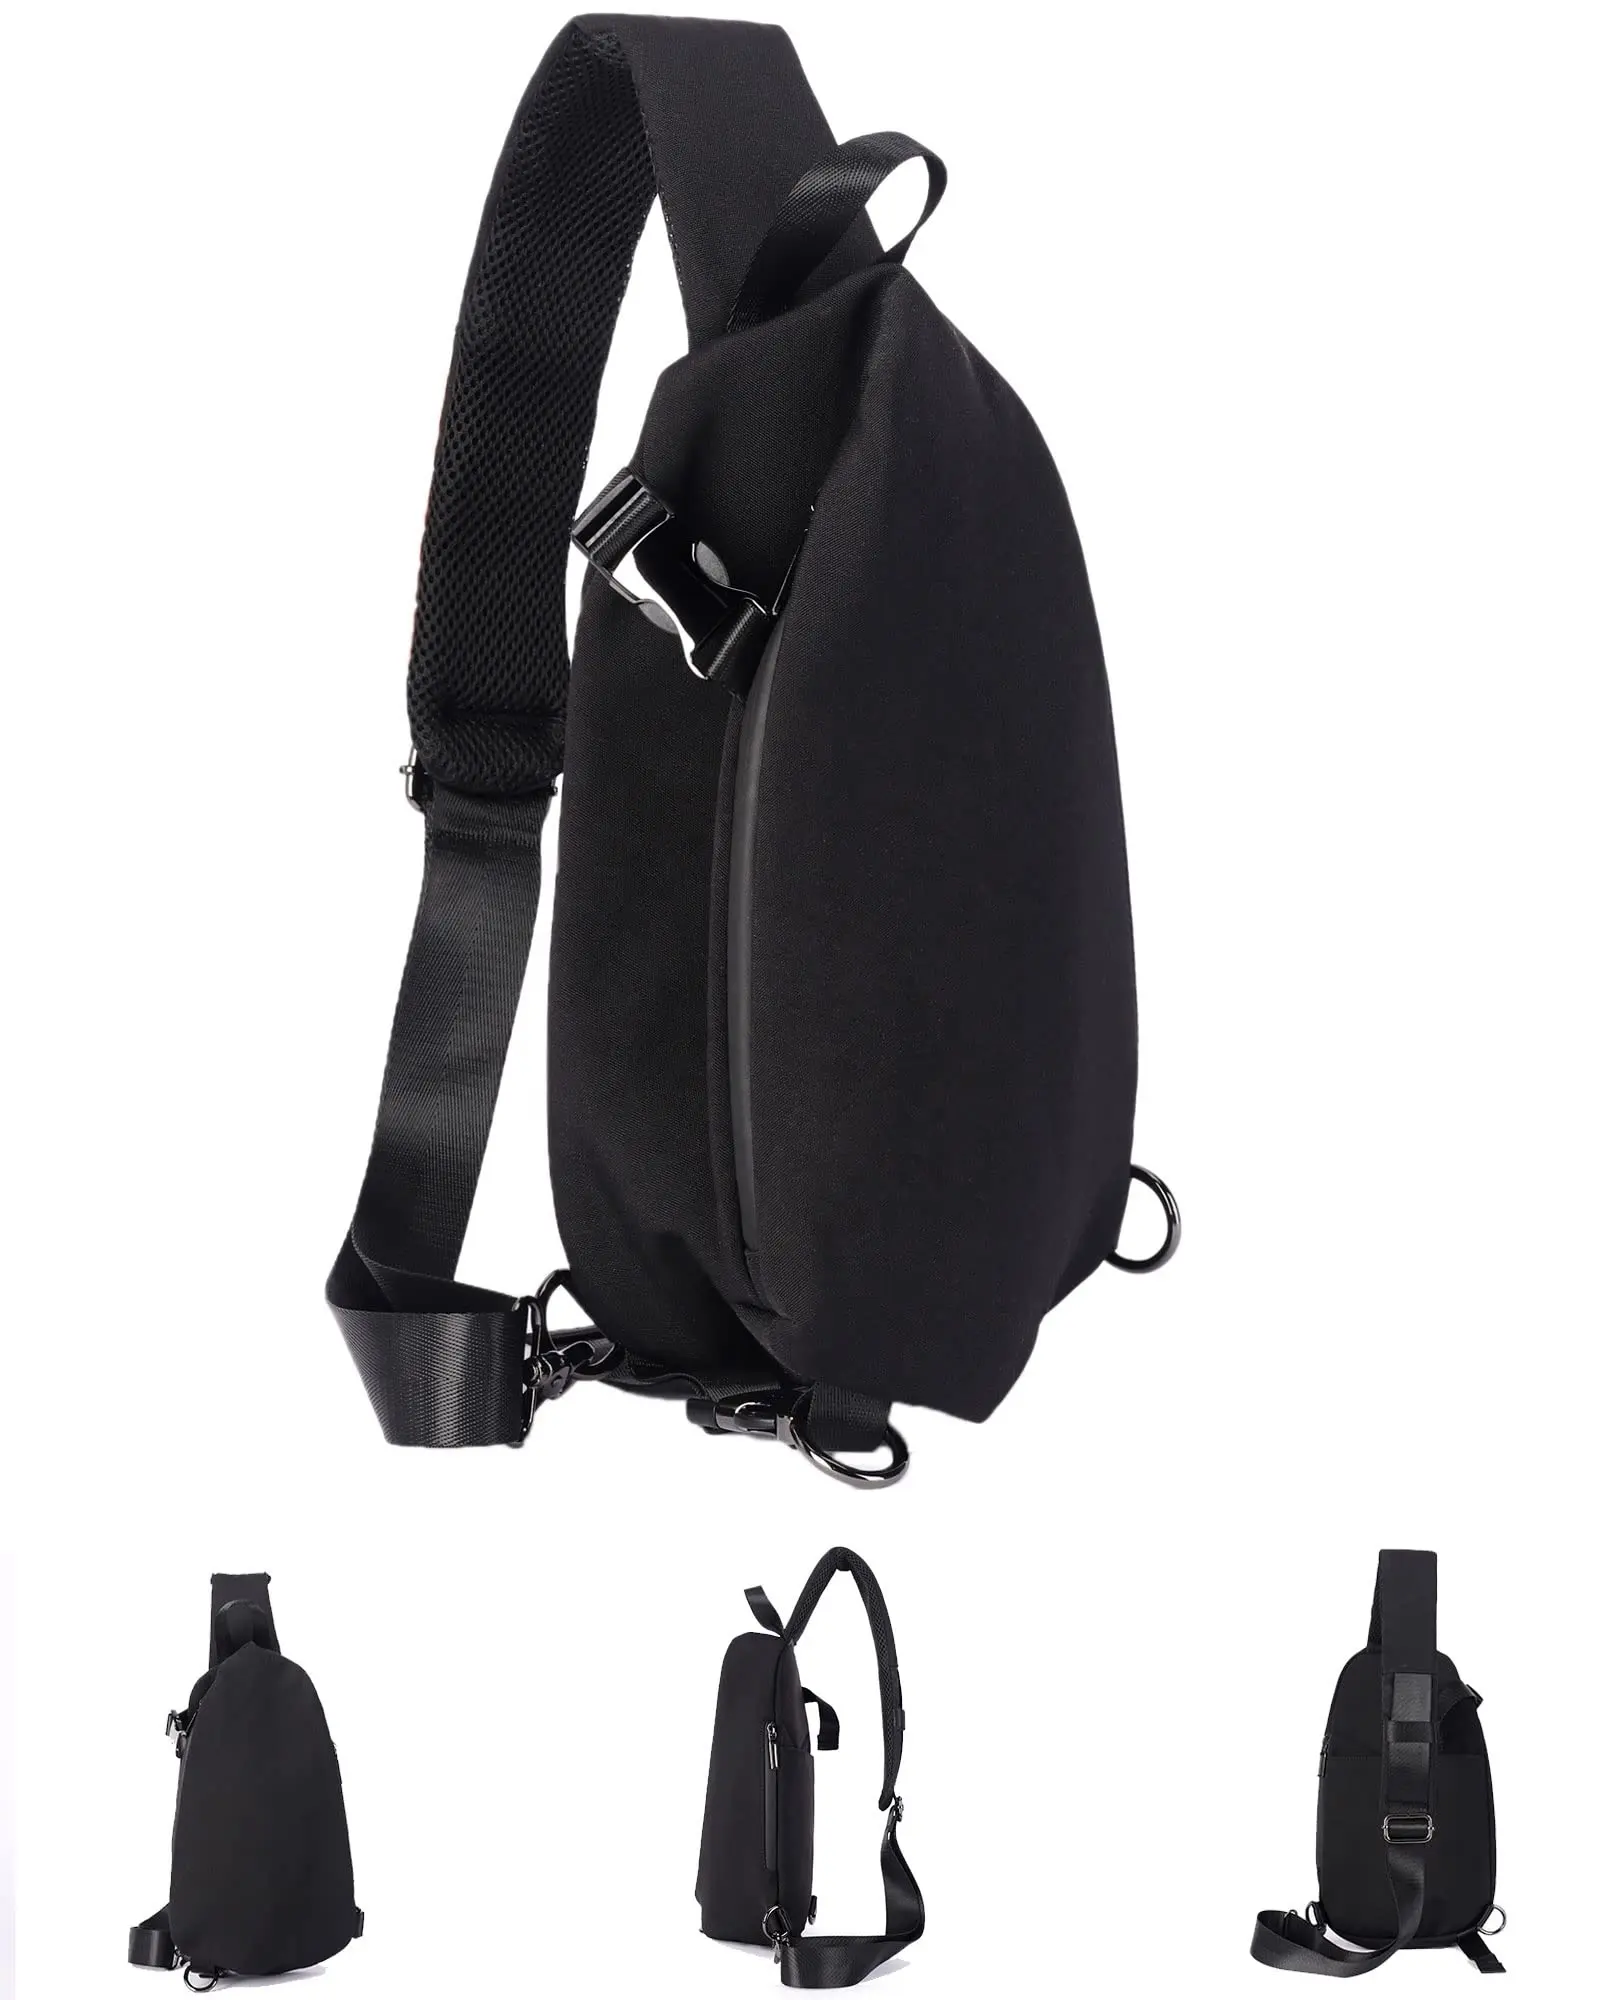 Small Black Sling Crossbody Backpack Shoulder Bag For Men Women Lightweight 1 Strap Backpack Sling Bag Backpack For Hiking Wa